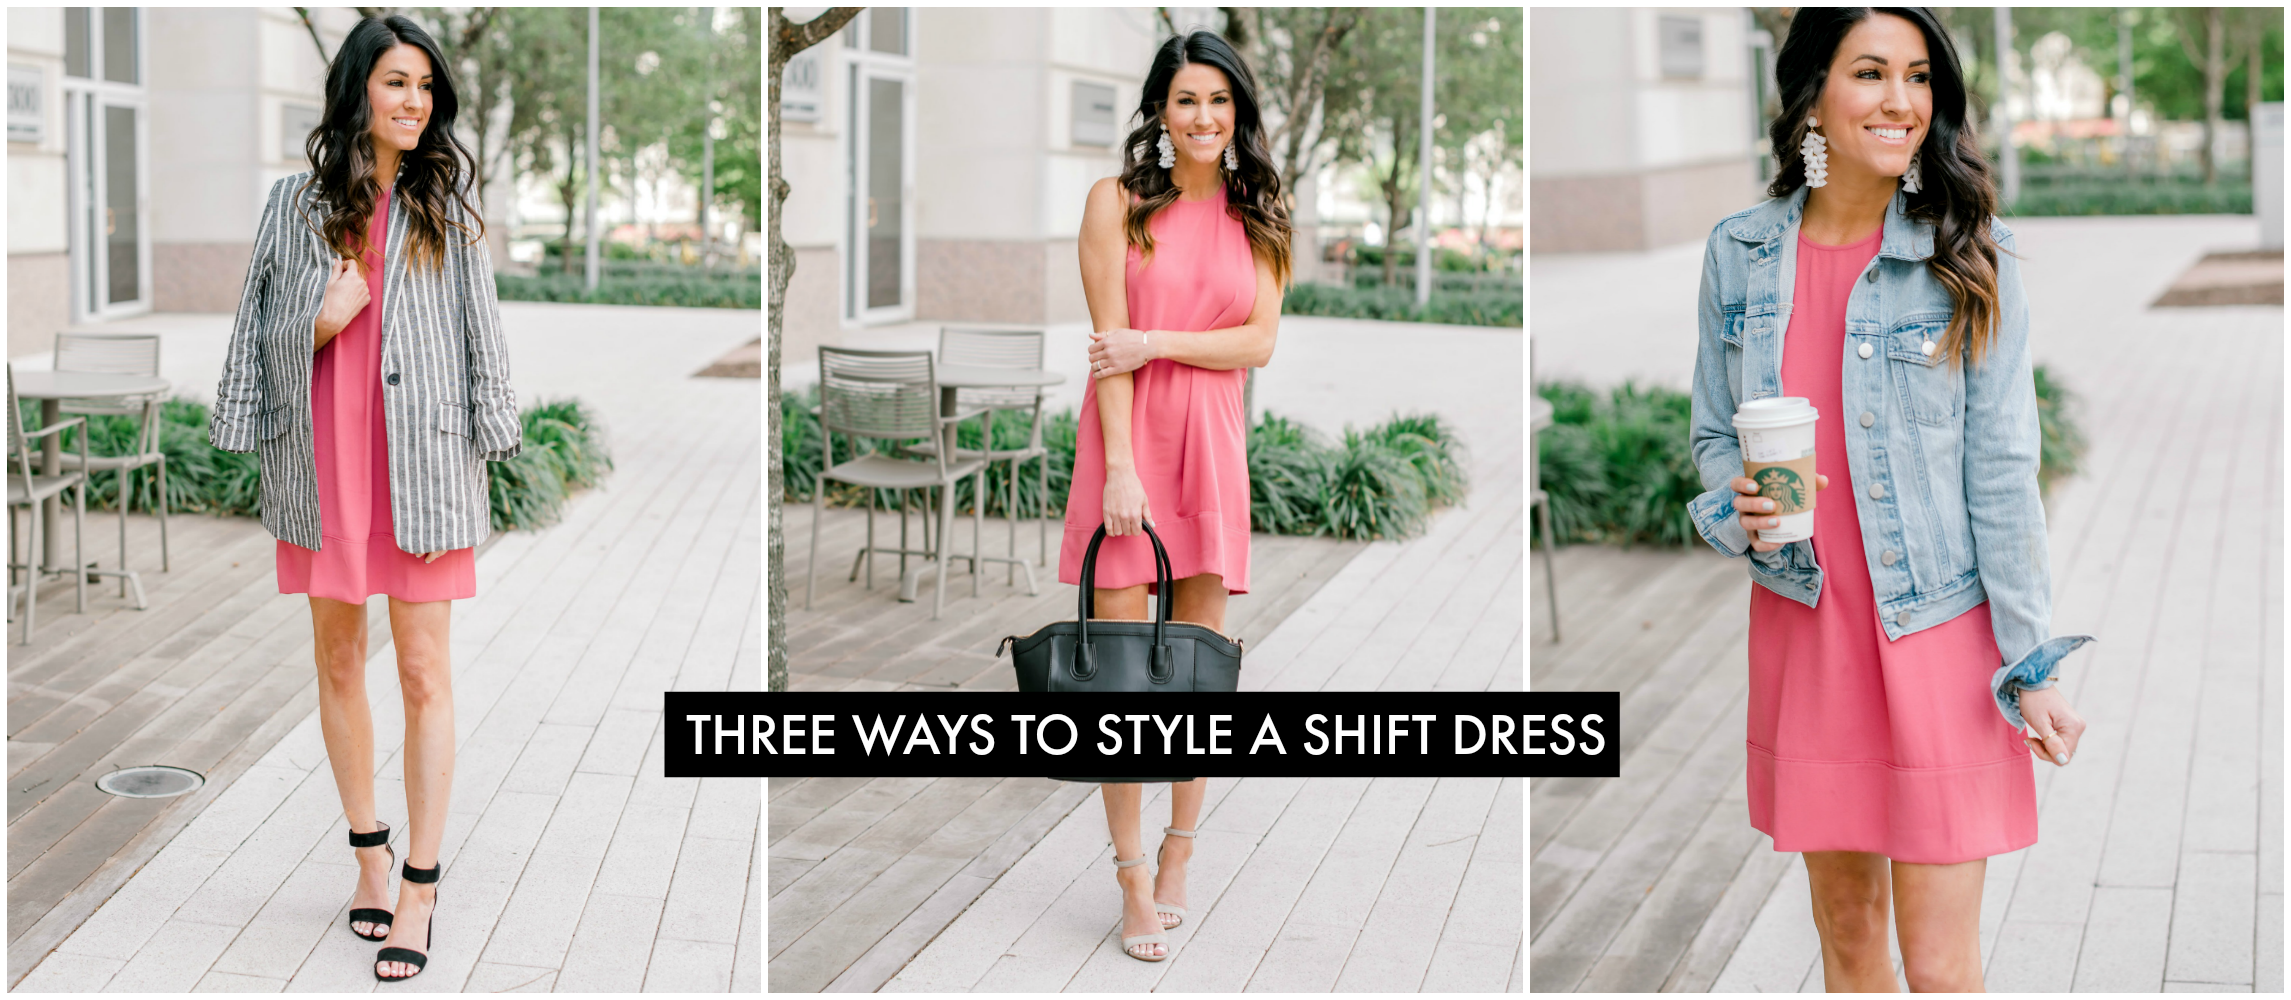 Shift Dress Three Ways